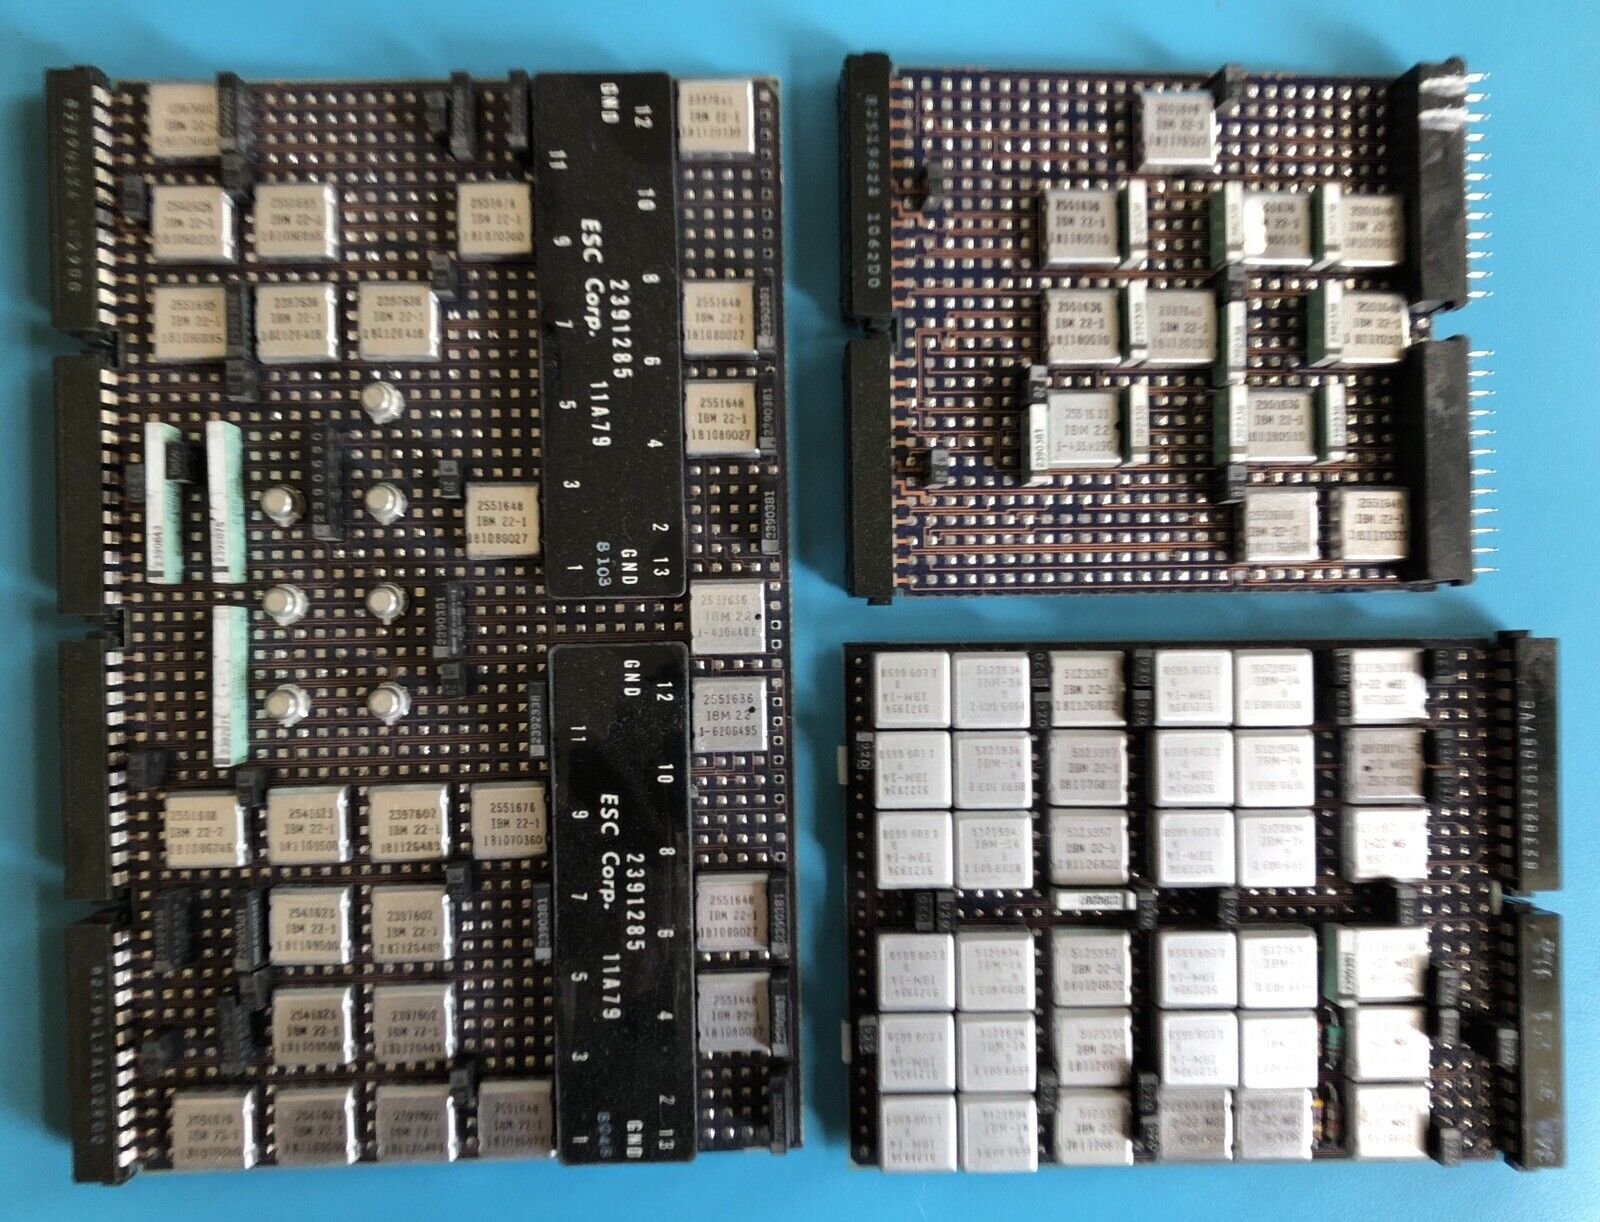 Vintage IBM System/360 Mainframe Computer SLT Processor Boards